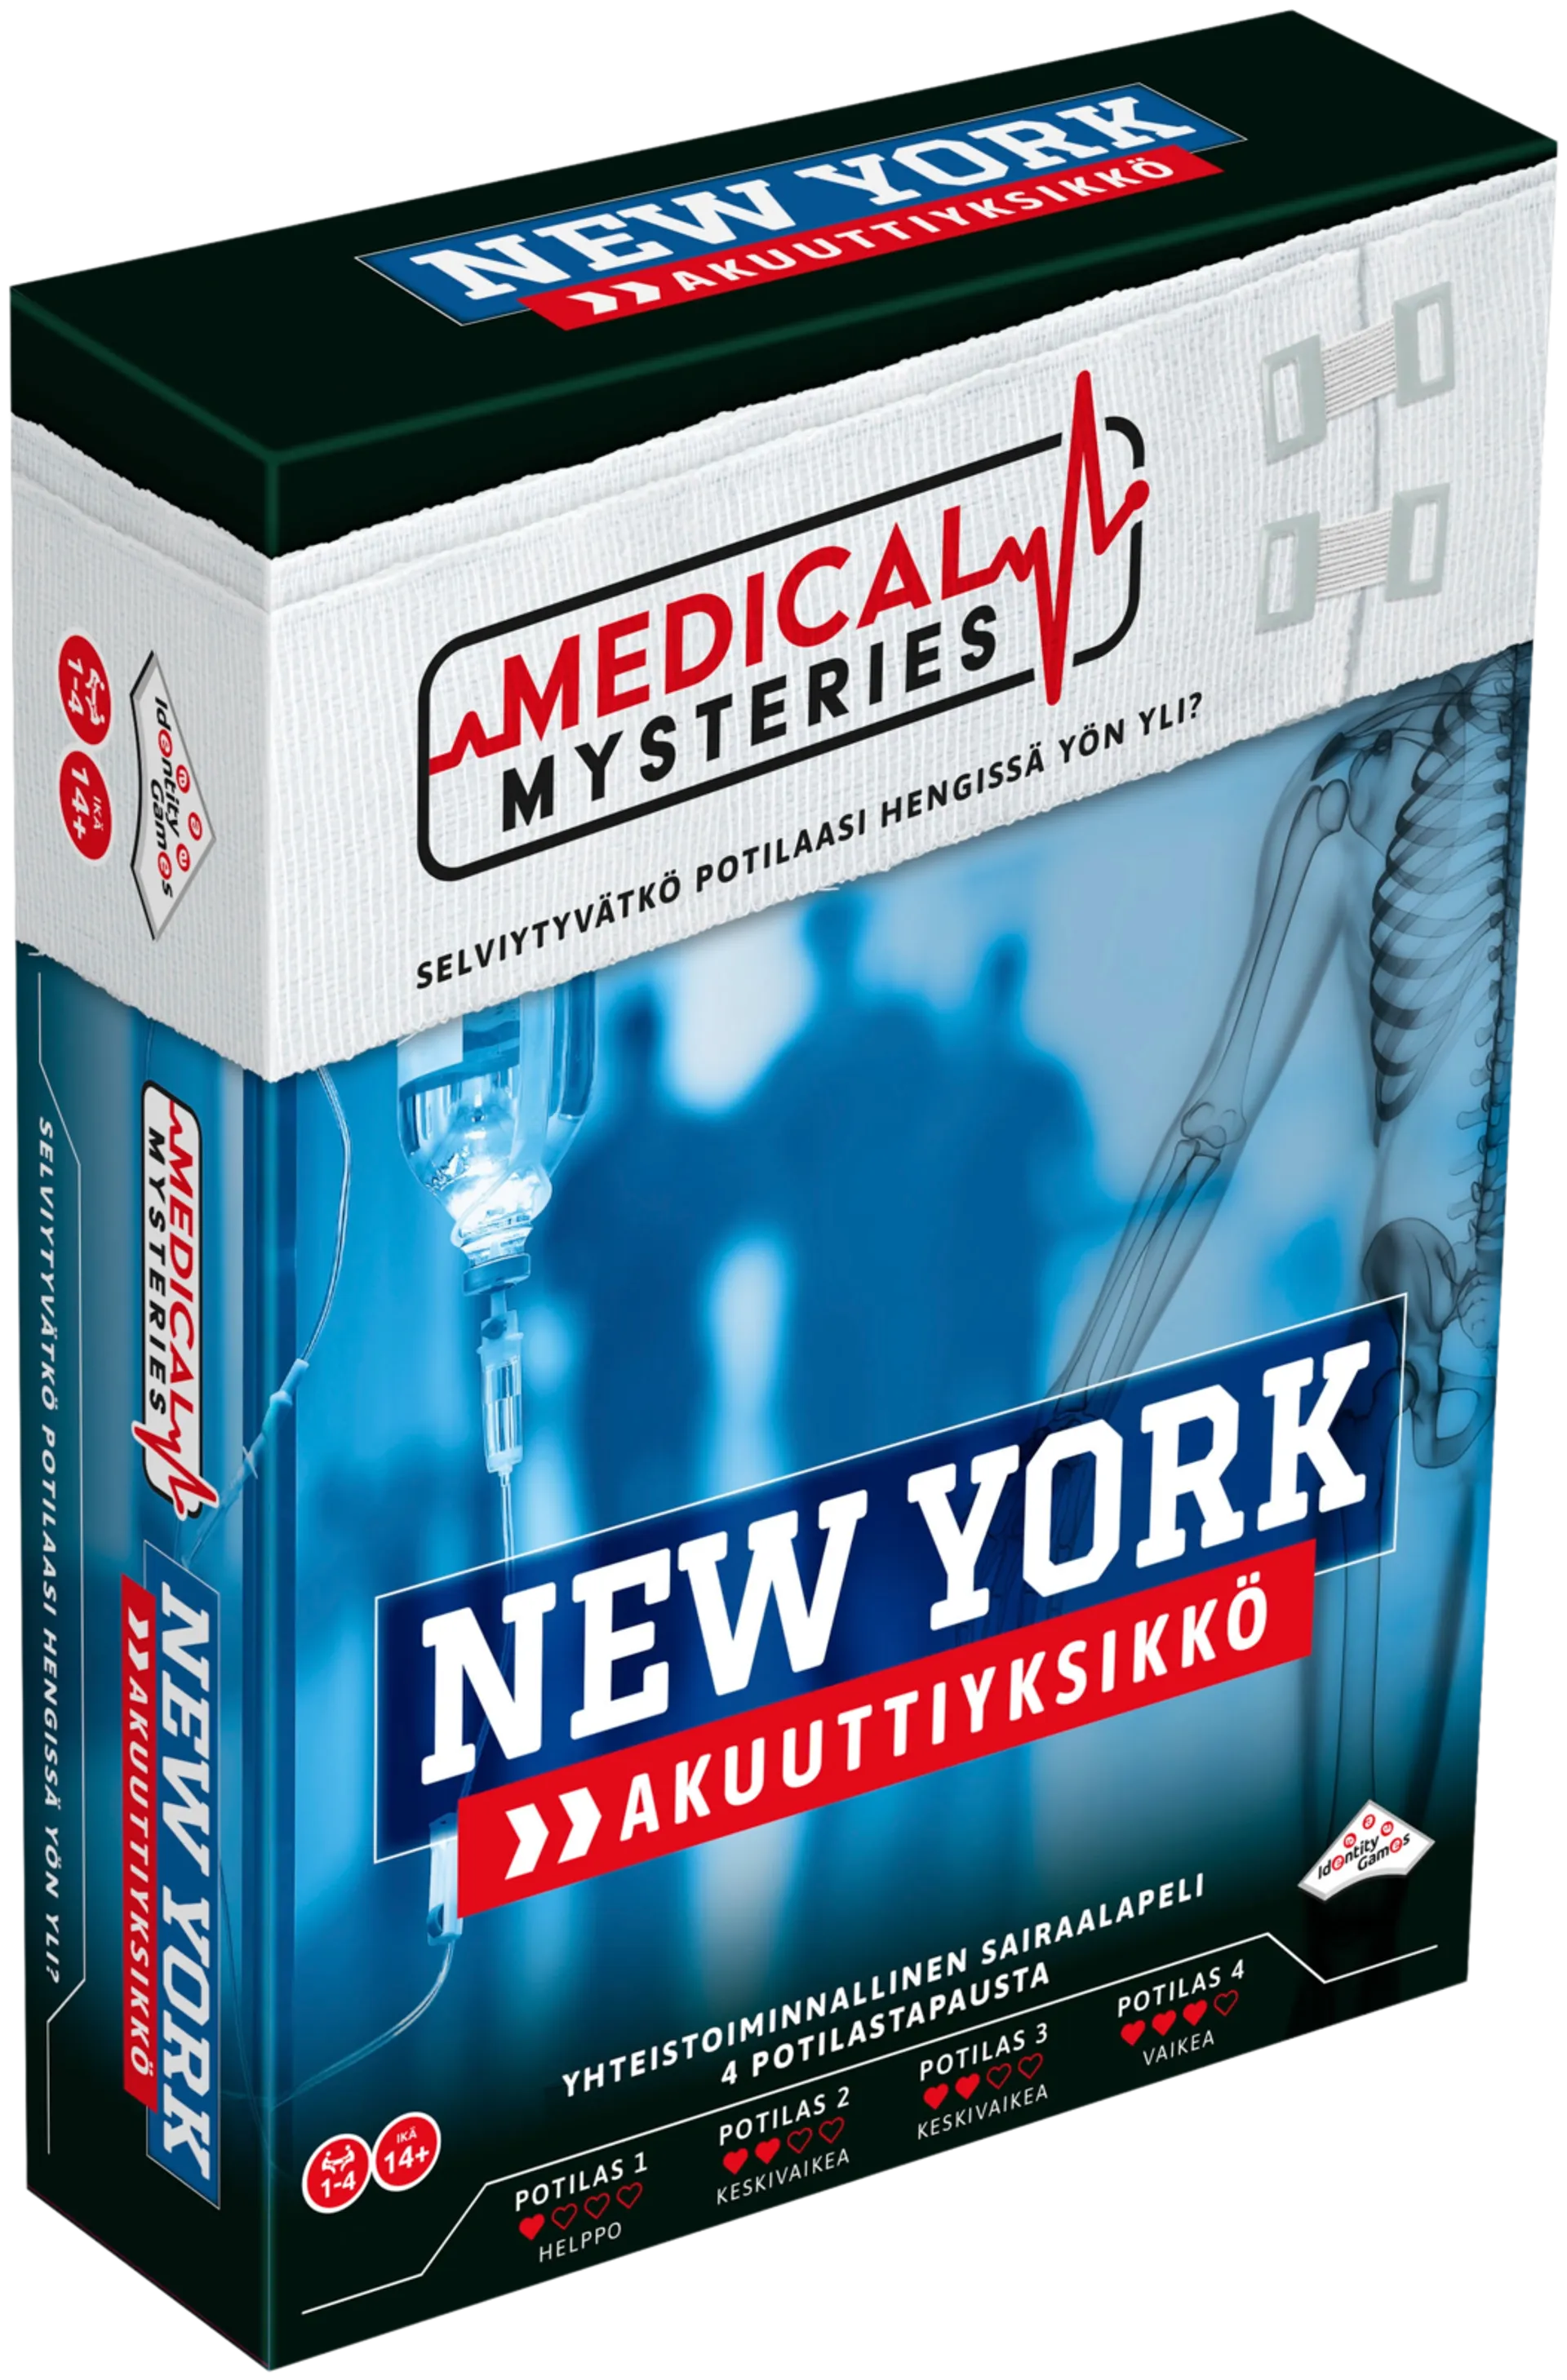 Medical Mysteries mysteeripeli New York Akuuttiyksikkö